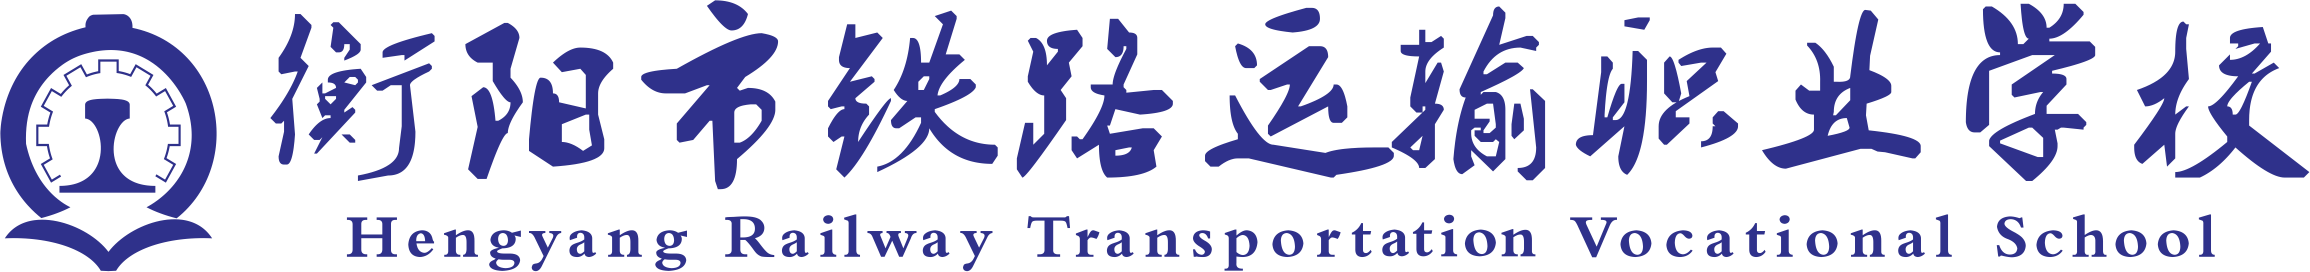 衡阳市铁路运输职业学校